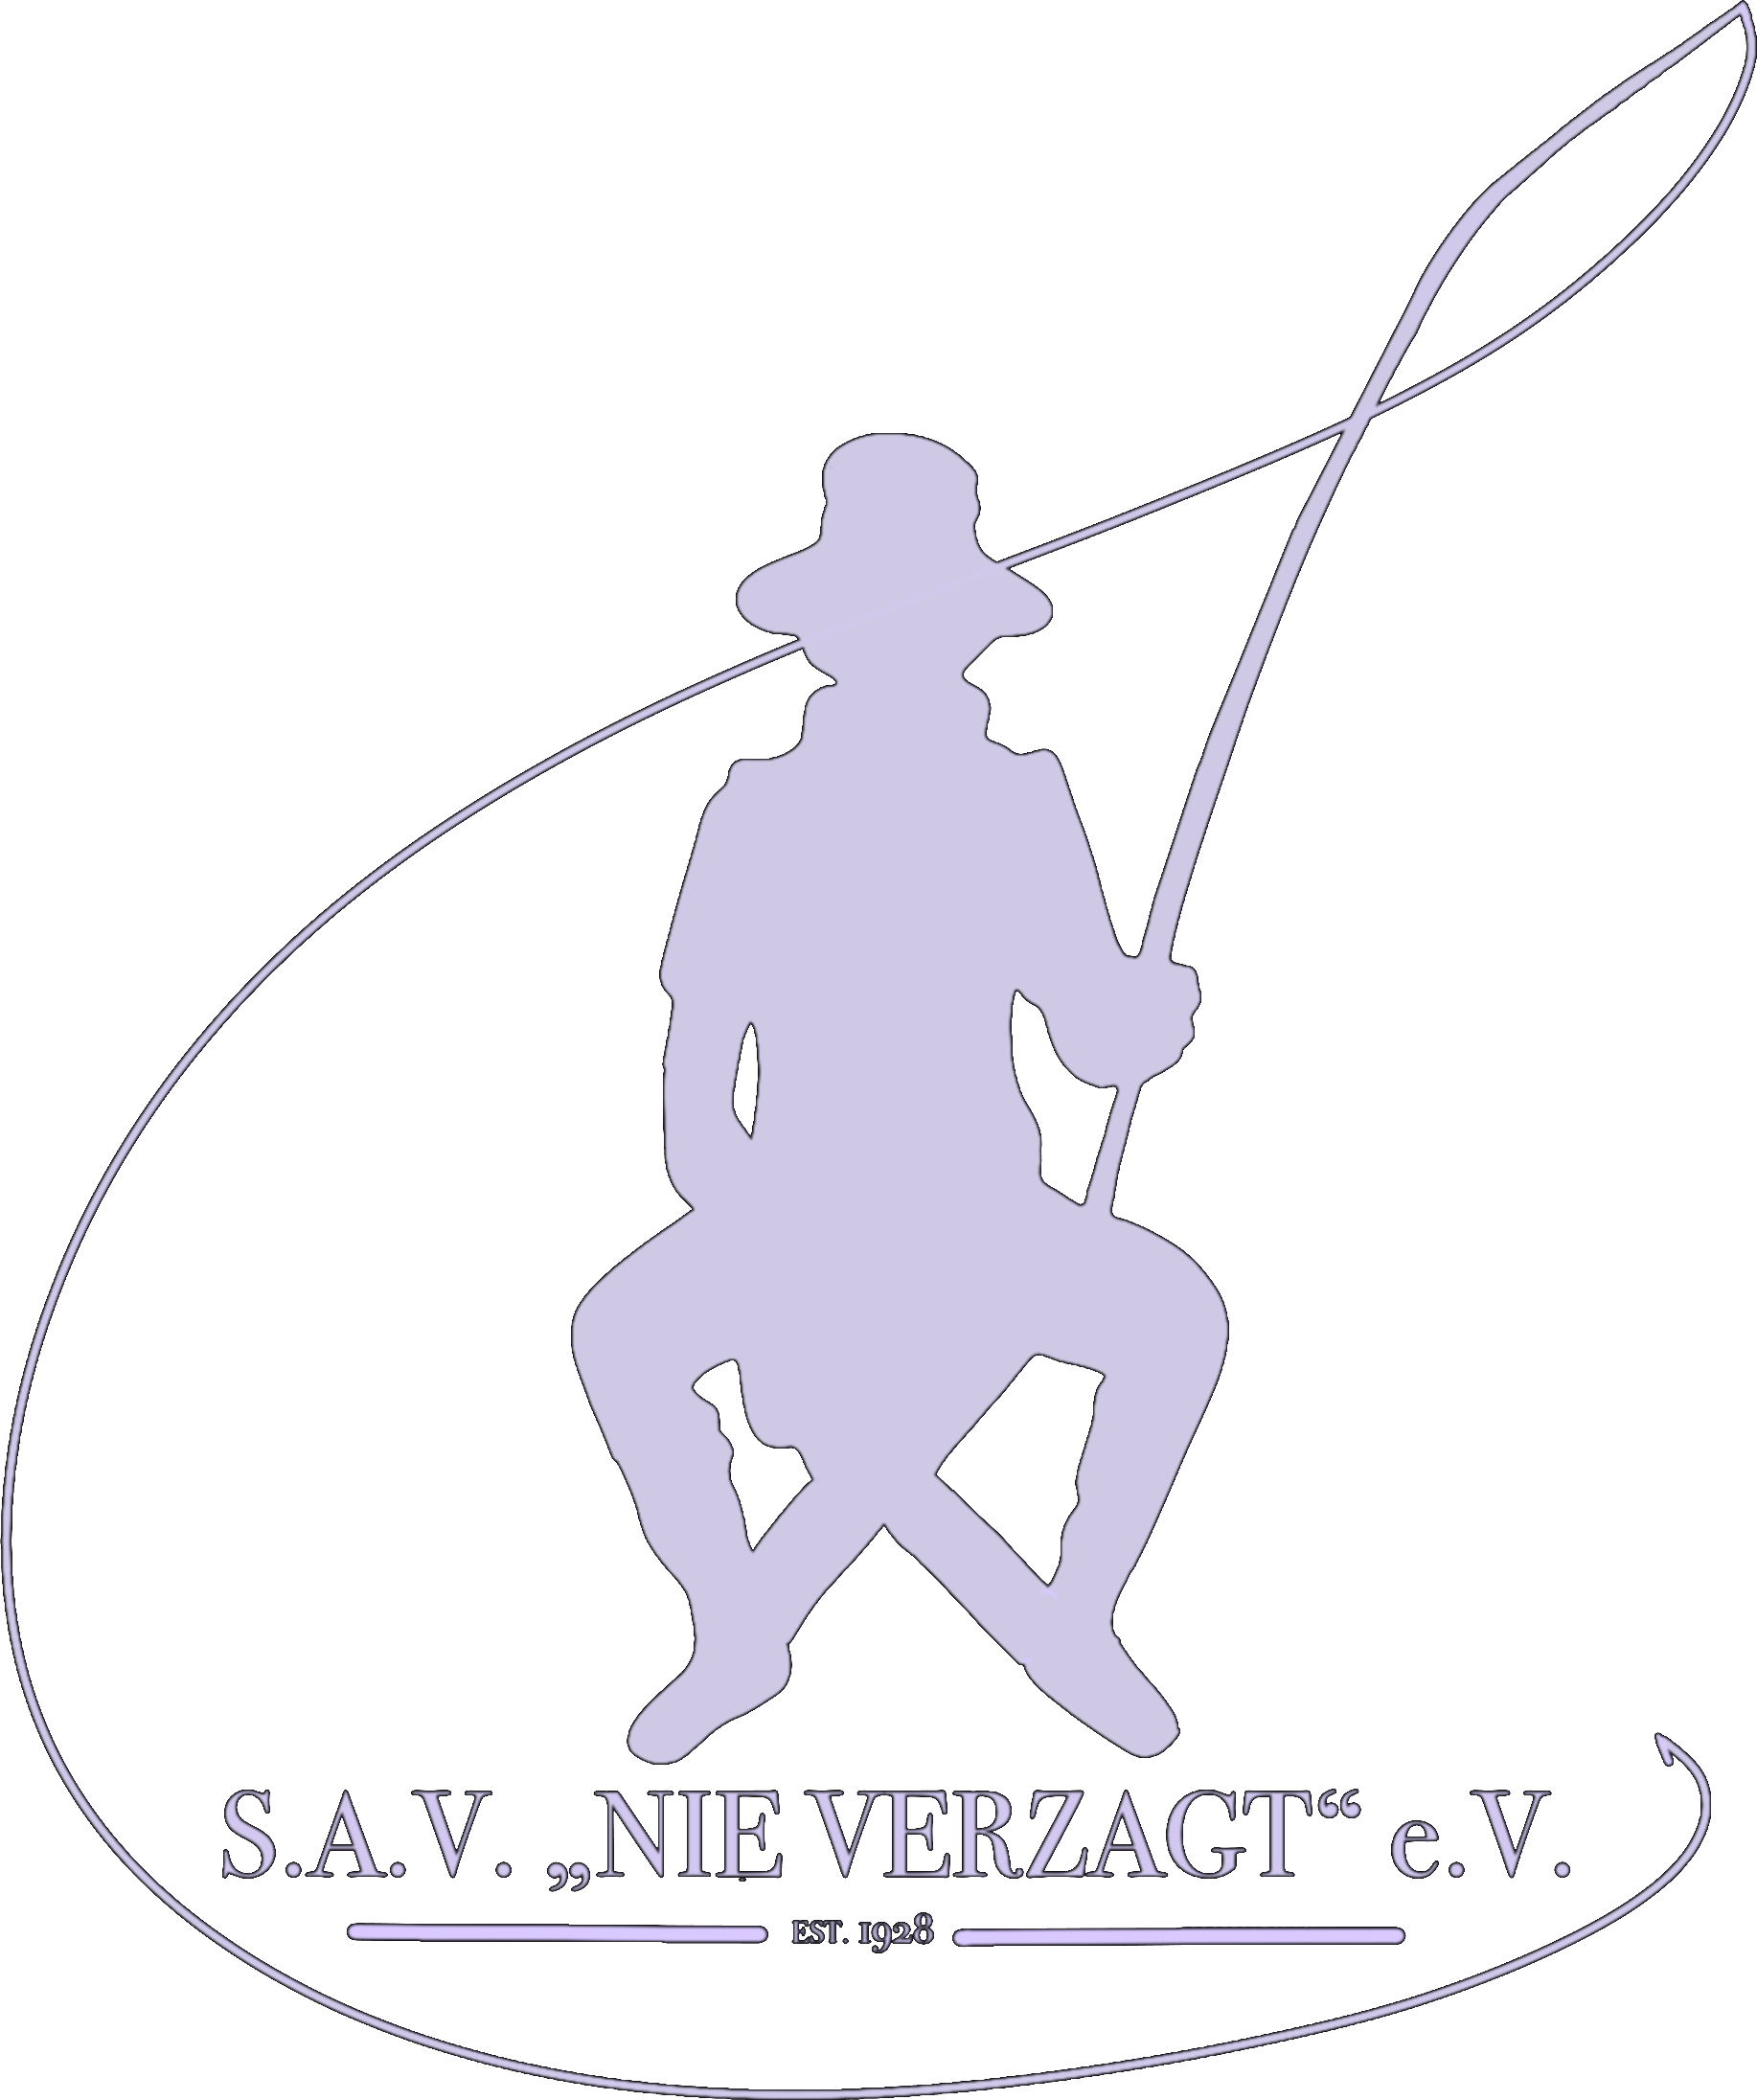 S.A.V. "Nie verzagt" von 1928 e. V